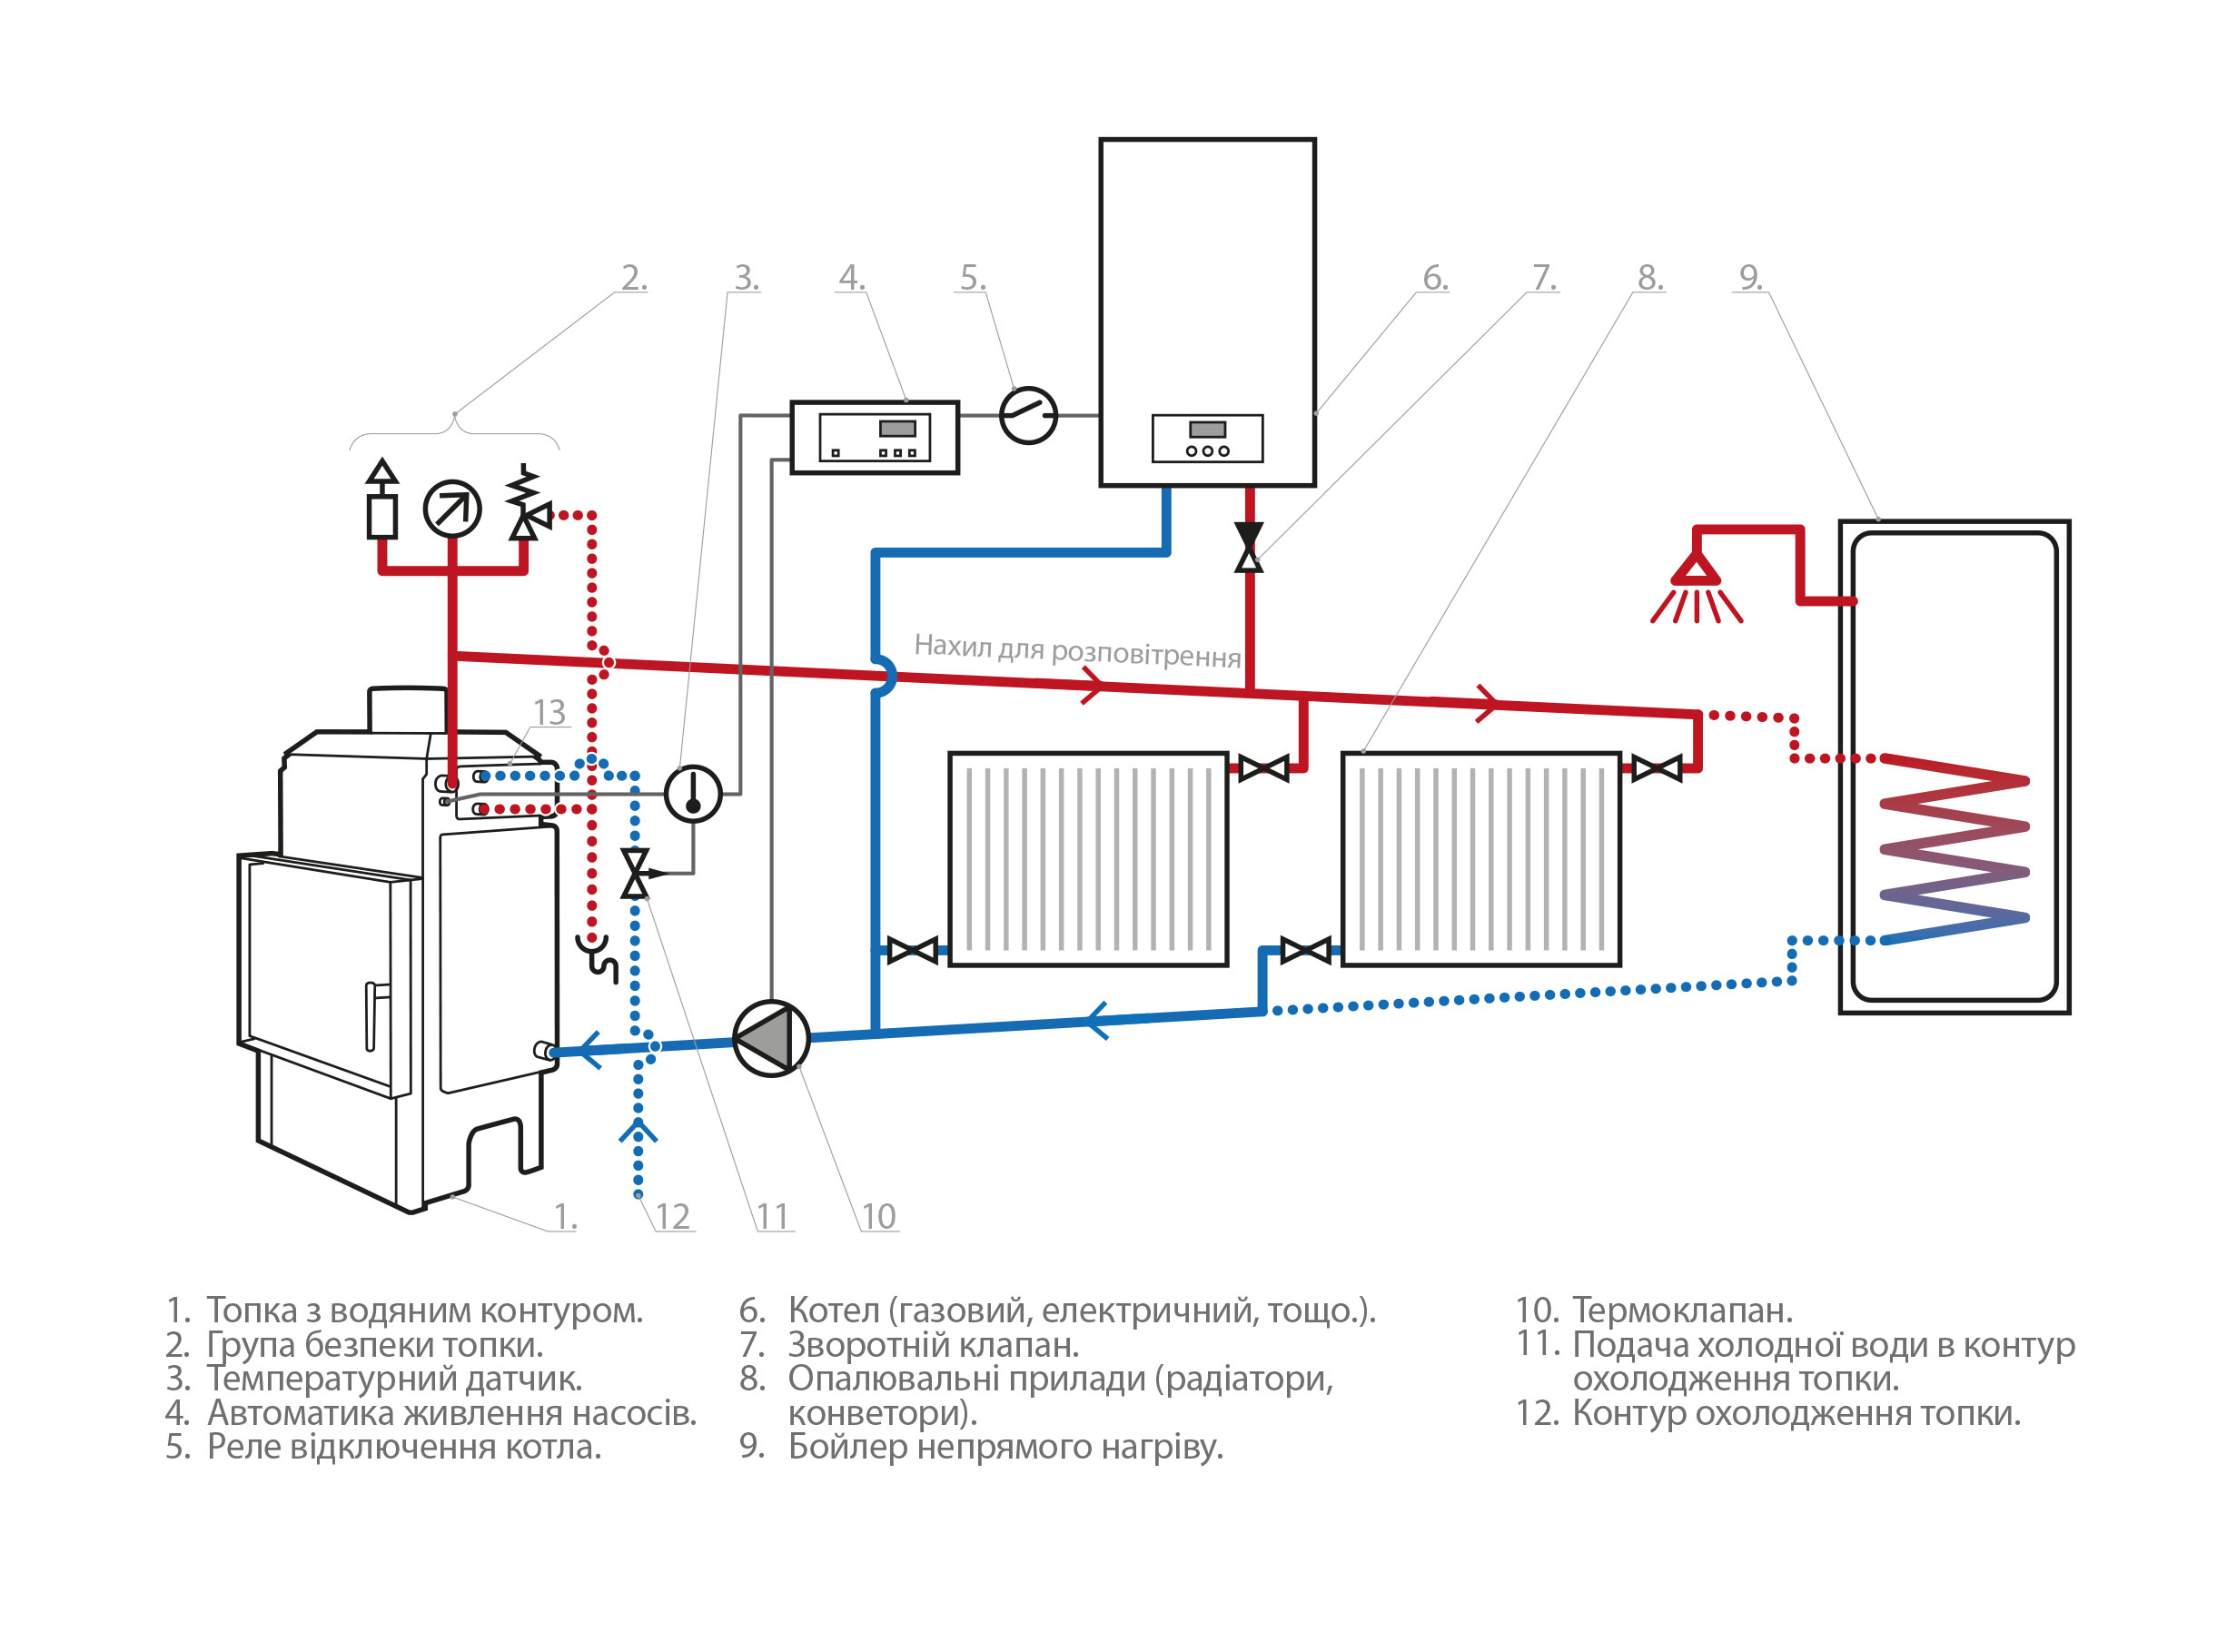 Сделай котел потеплее. Схема подключения электрического котла отопления закрытой системы. Схема подключения электрокотла к печному отоплению. Схема подключения дровяного котла к системе отопления. Схема подключения теплообменника отопления в котельной.